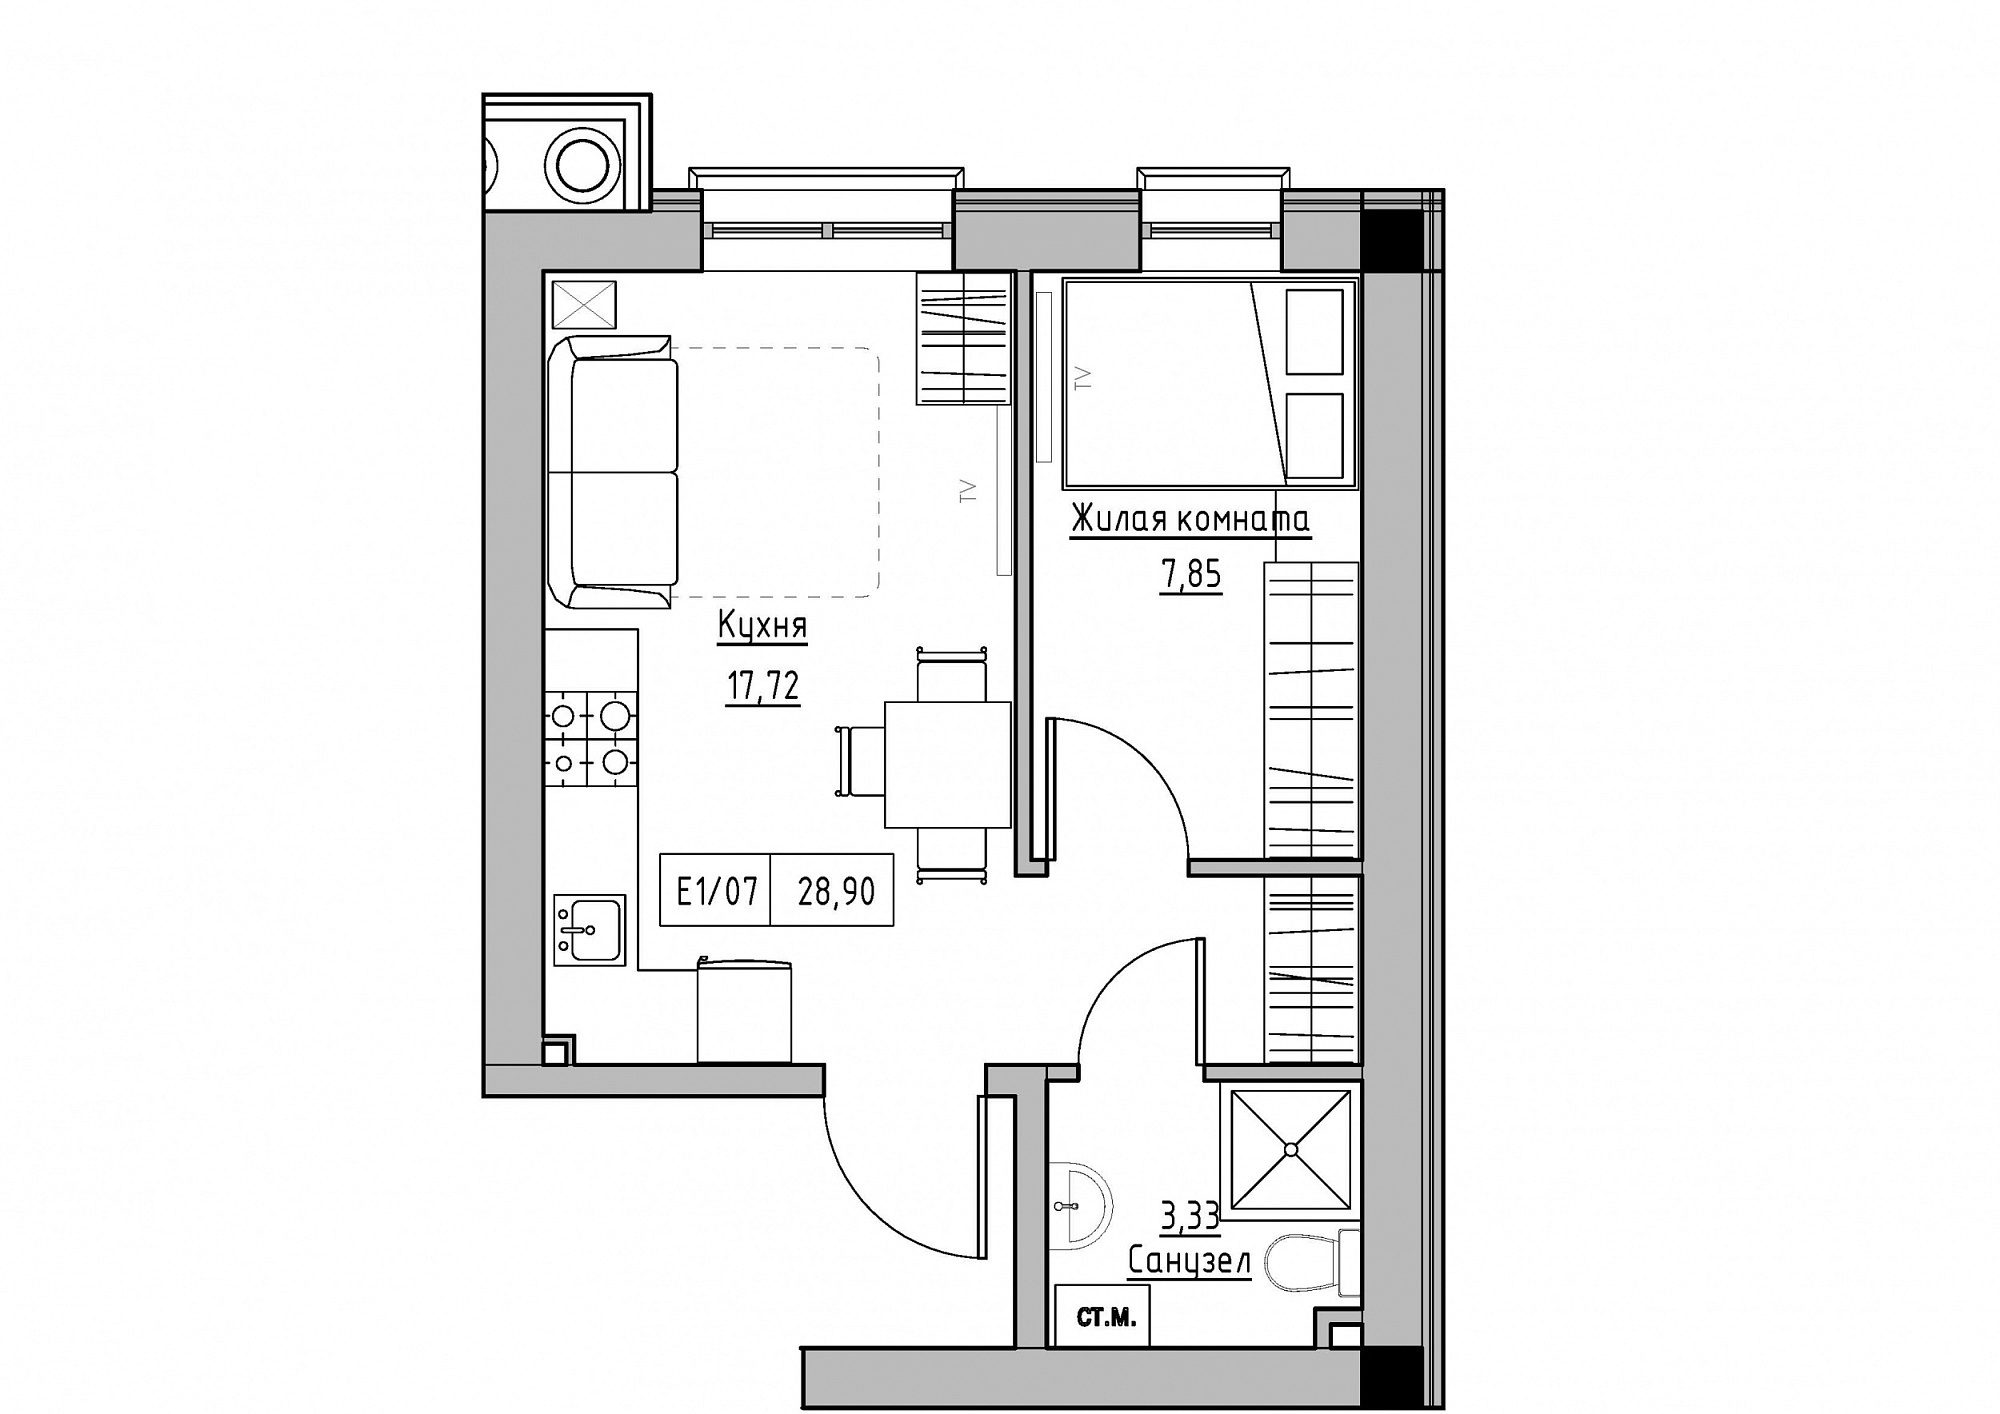 Планировка 1-к квартира площей 28.9м2, KS-012-02/0002.